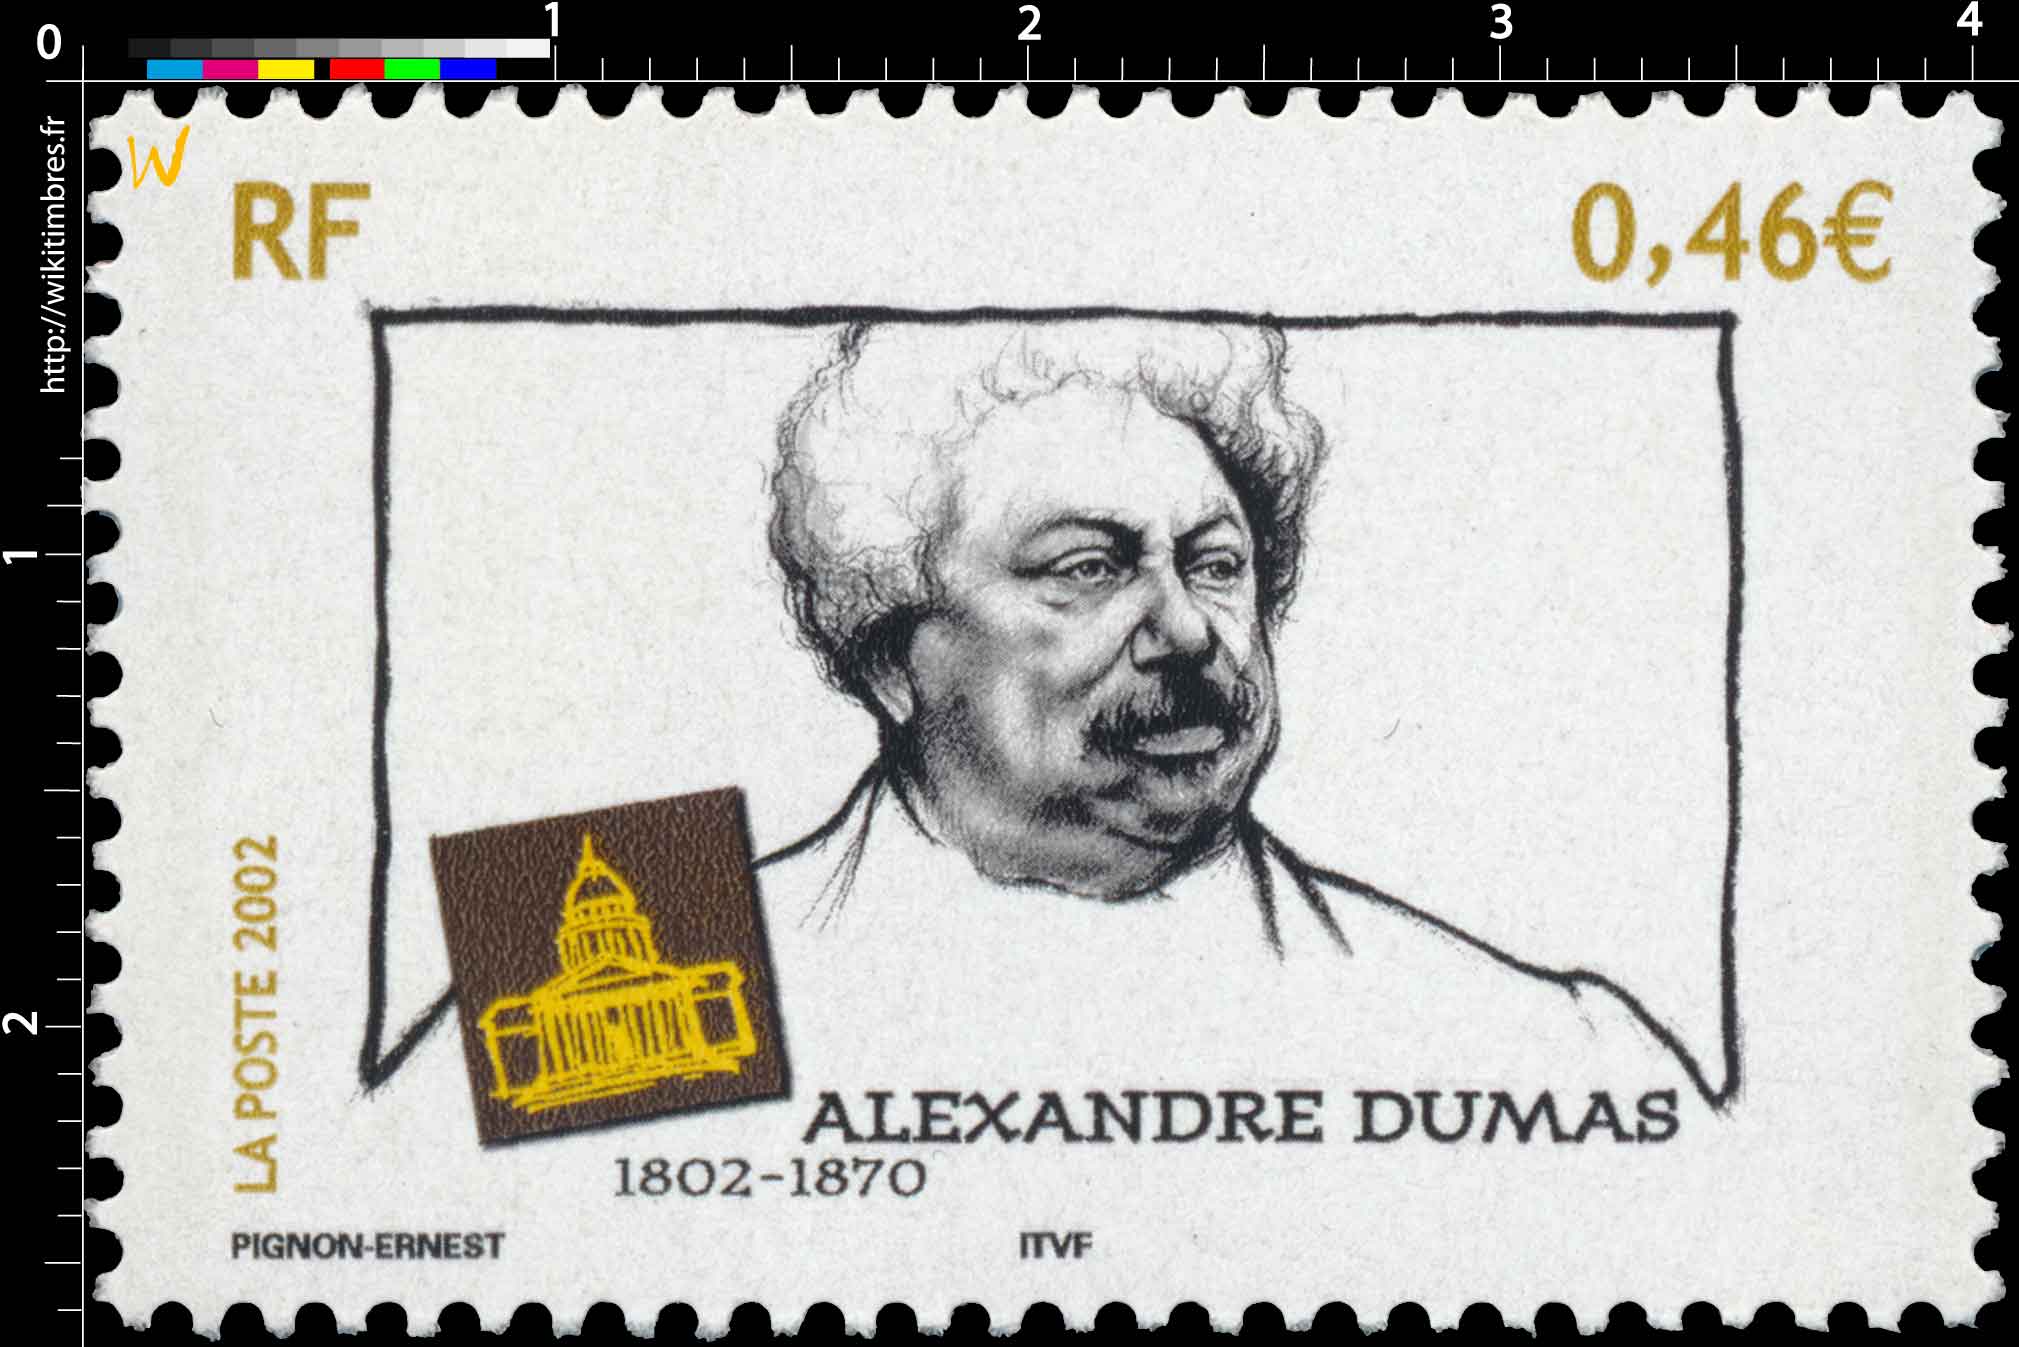 2002 ALEXANDRE DUMAS 1802-1870